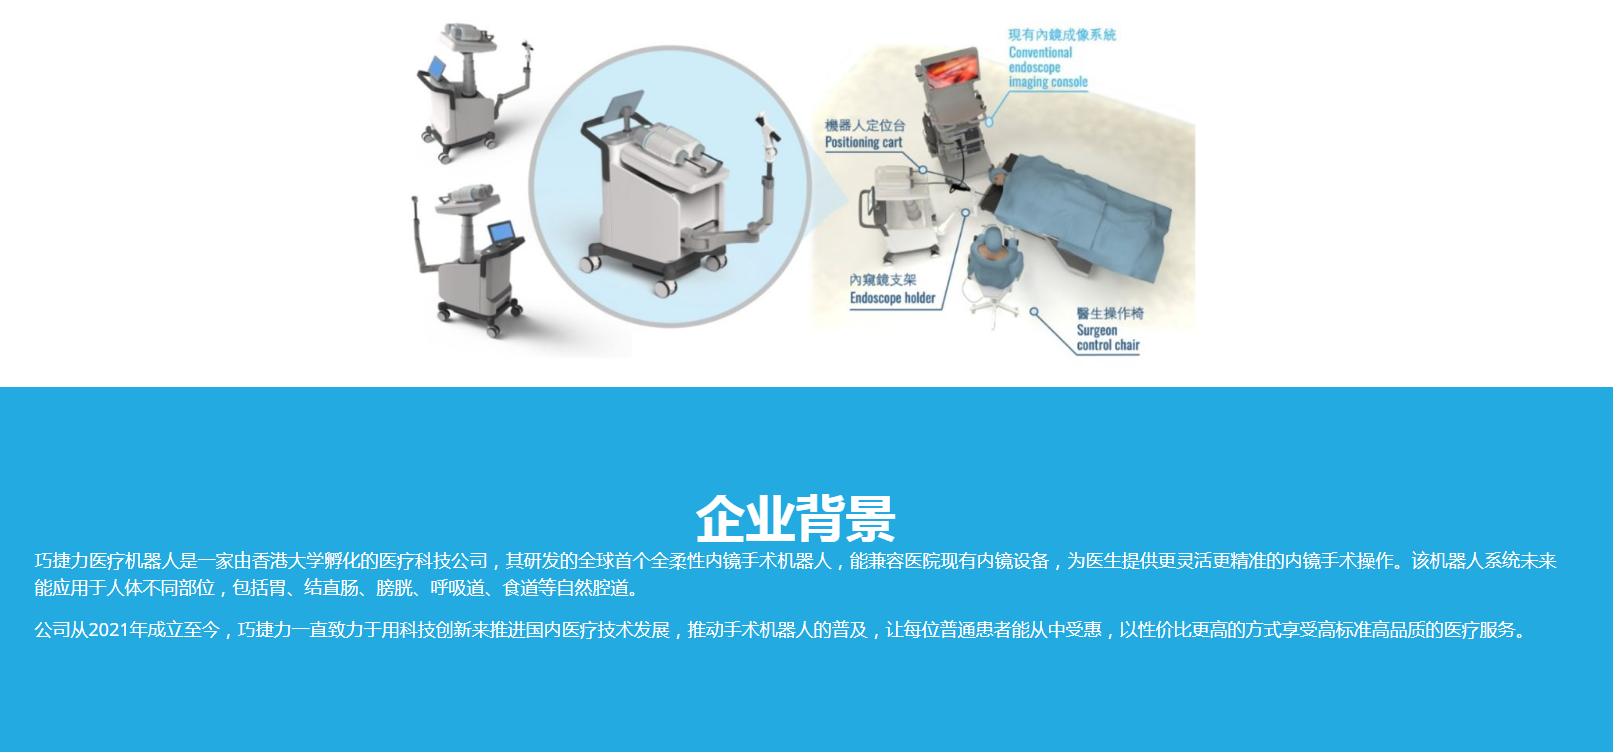 展商推荐：广州巧捷力医疗机器人有限公司主要展示内镜手术机器人